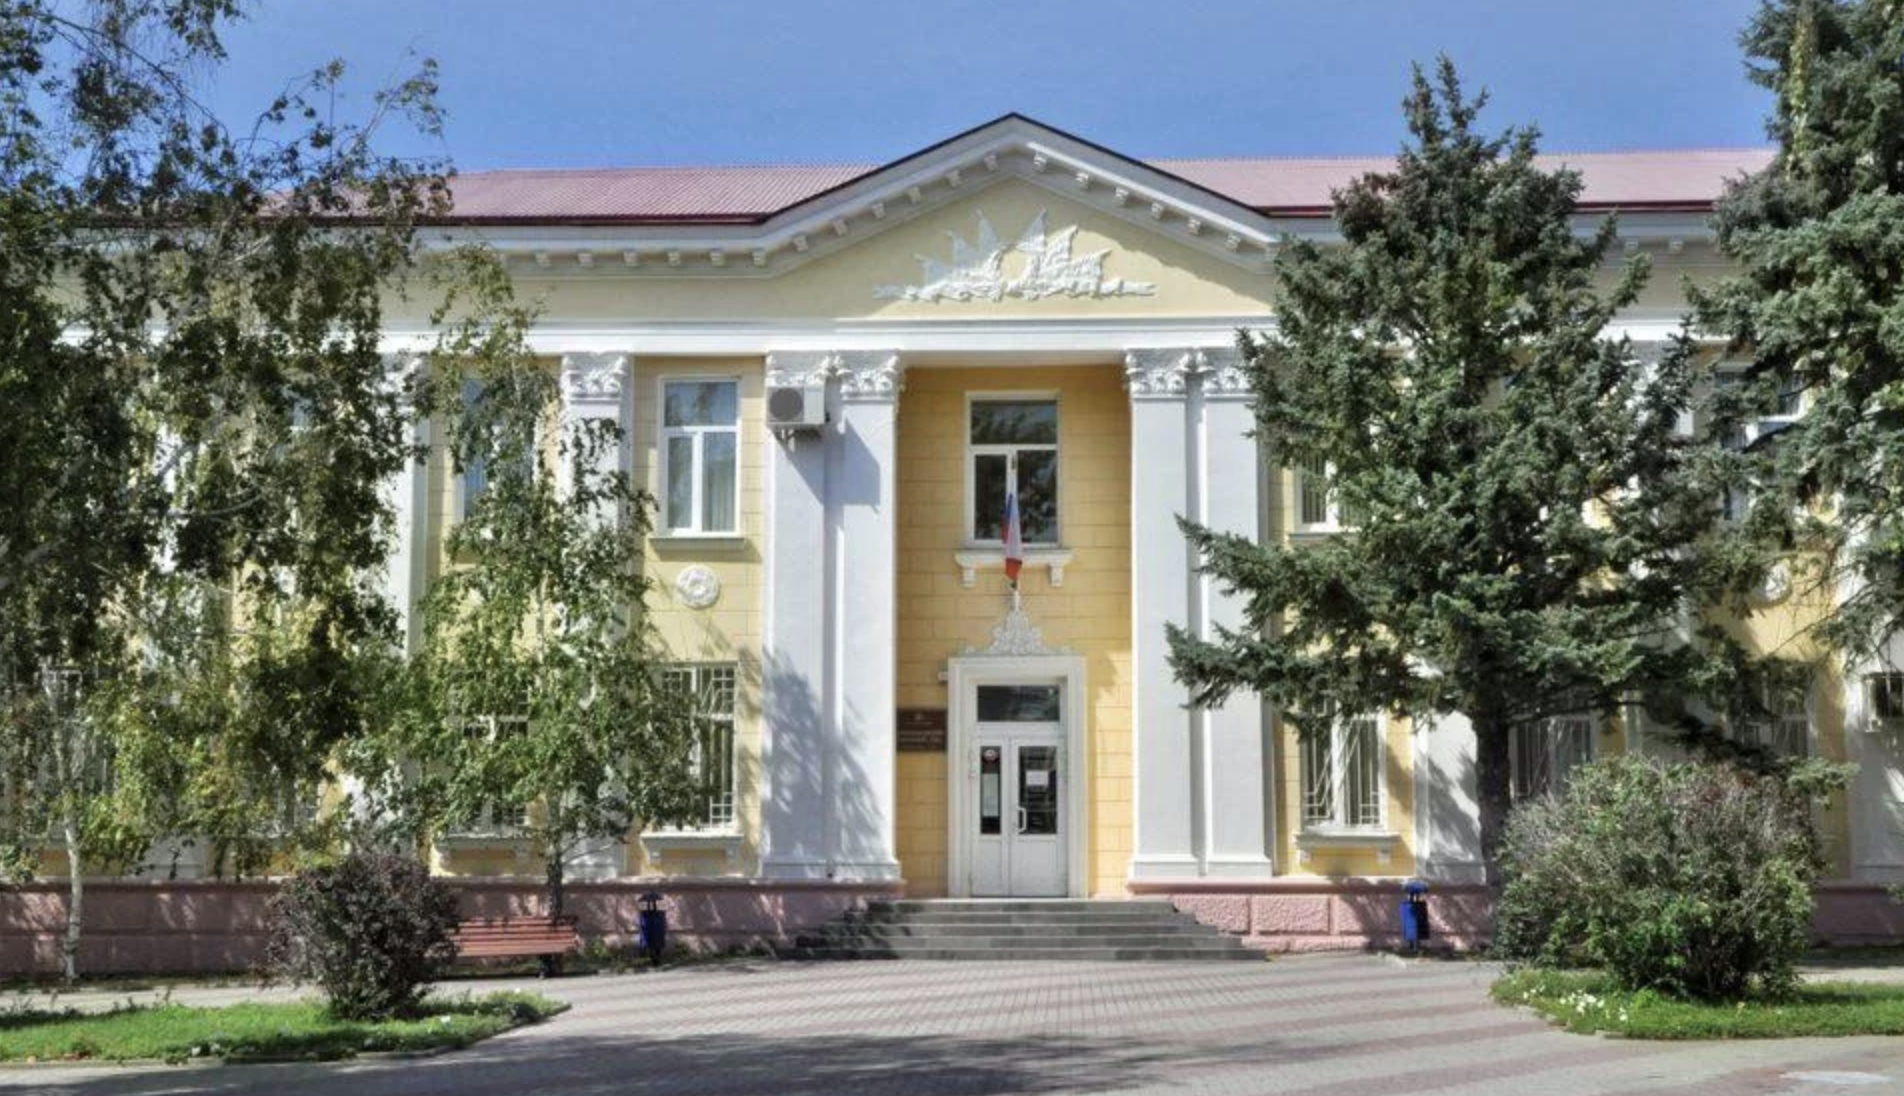 Сайт ленинского районного суда новороссийска